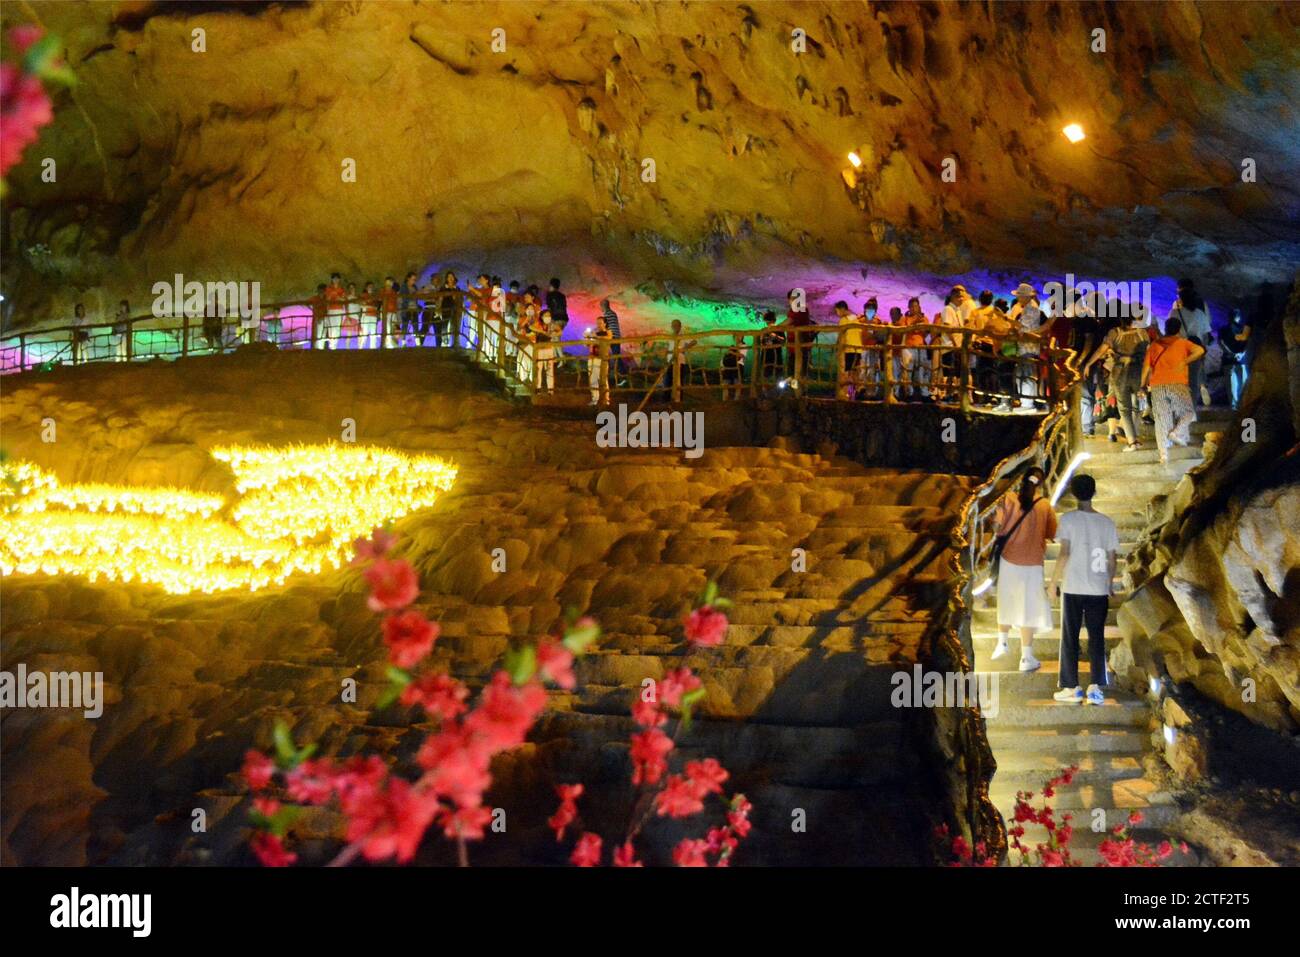 Indem sie Spiele spielen und sich mit roten Blumen kleiden, versuchen über 1500 Paare, die von der Aktivität angezogen wurden, traditionelle chinesische Hochzeitszeremonie in einem Ka Stockfoto